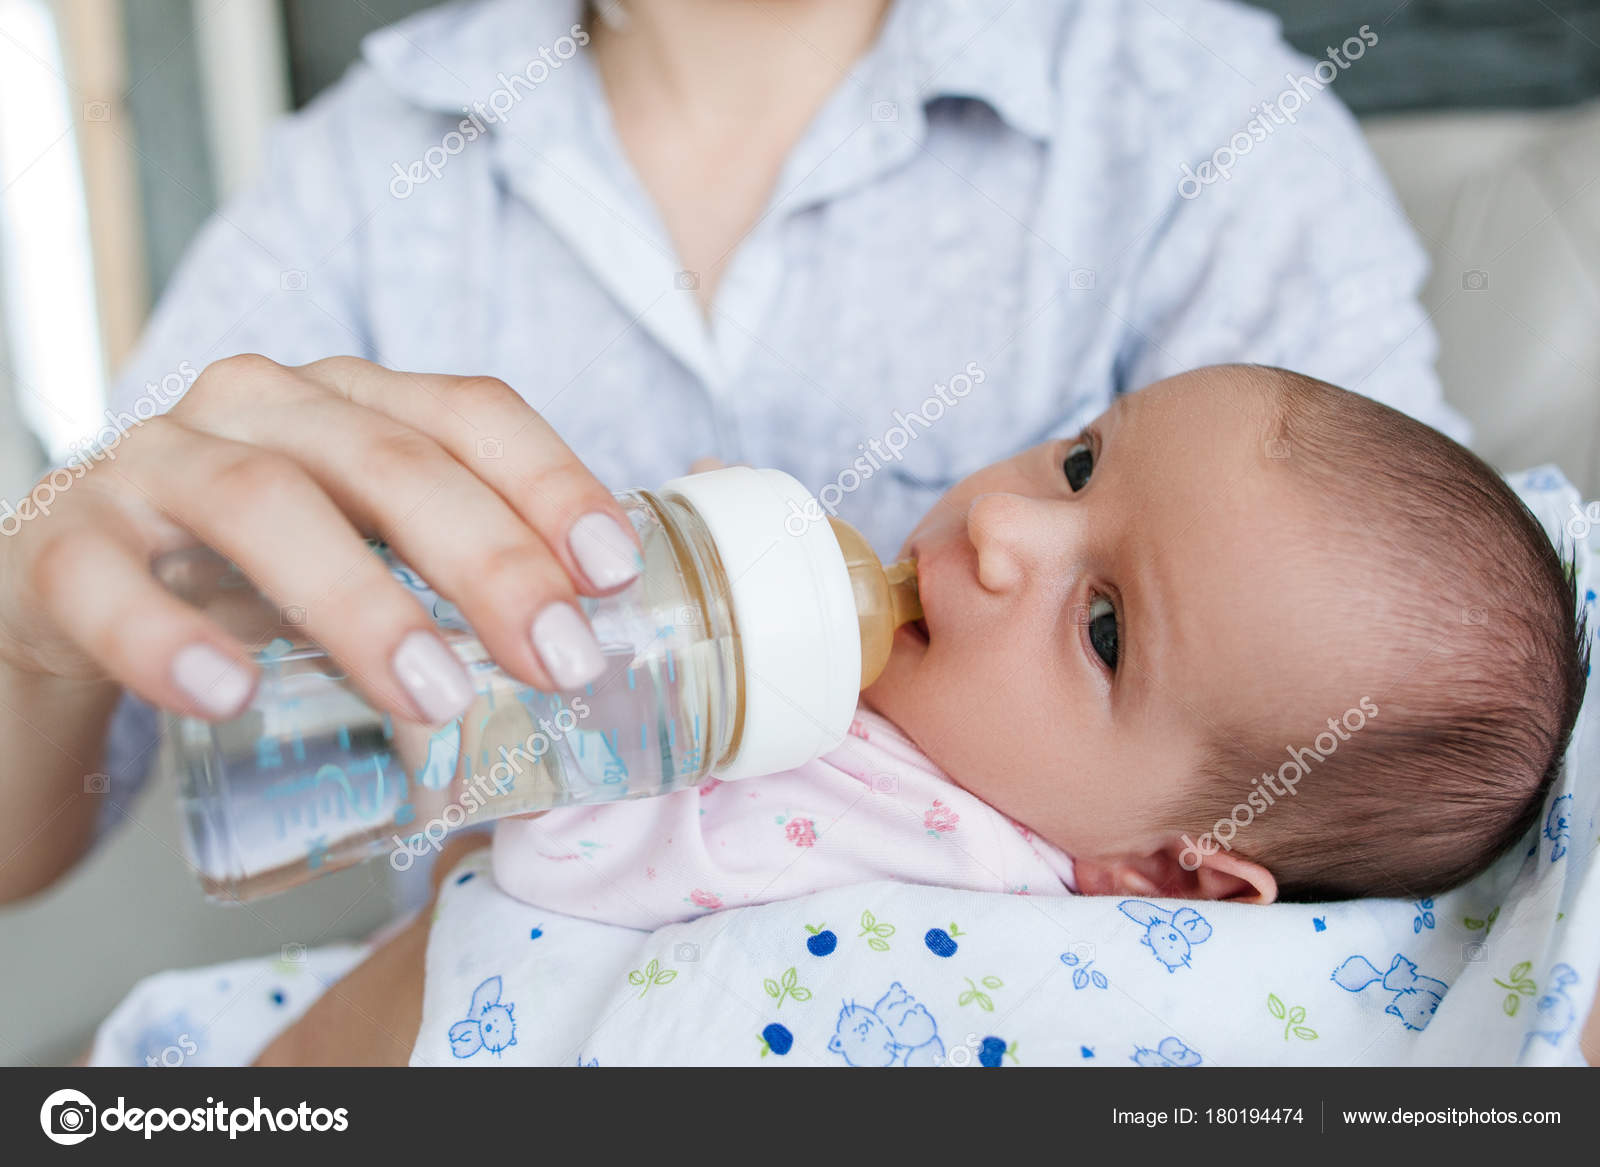 Новорожденным дают воду пить. Кормление из бутылочки водой грудничка. Поить водой новорожденного ребенка при грудном вскармливании. Допаивать грудничка водой. Грудничок в воде.